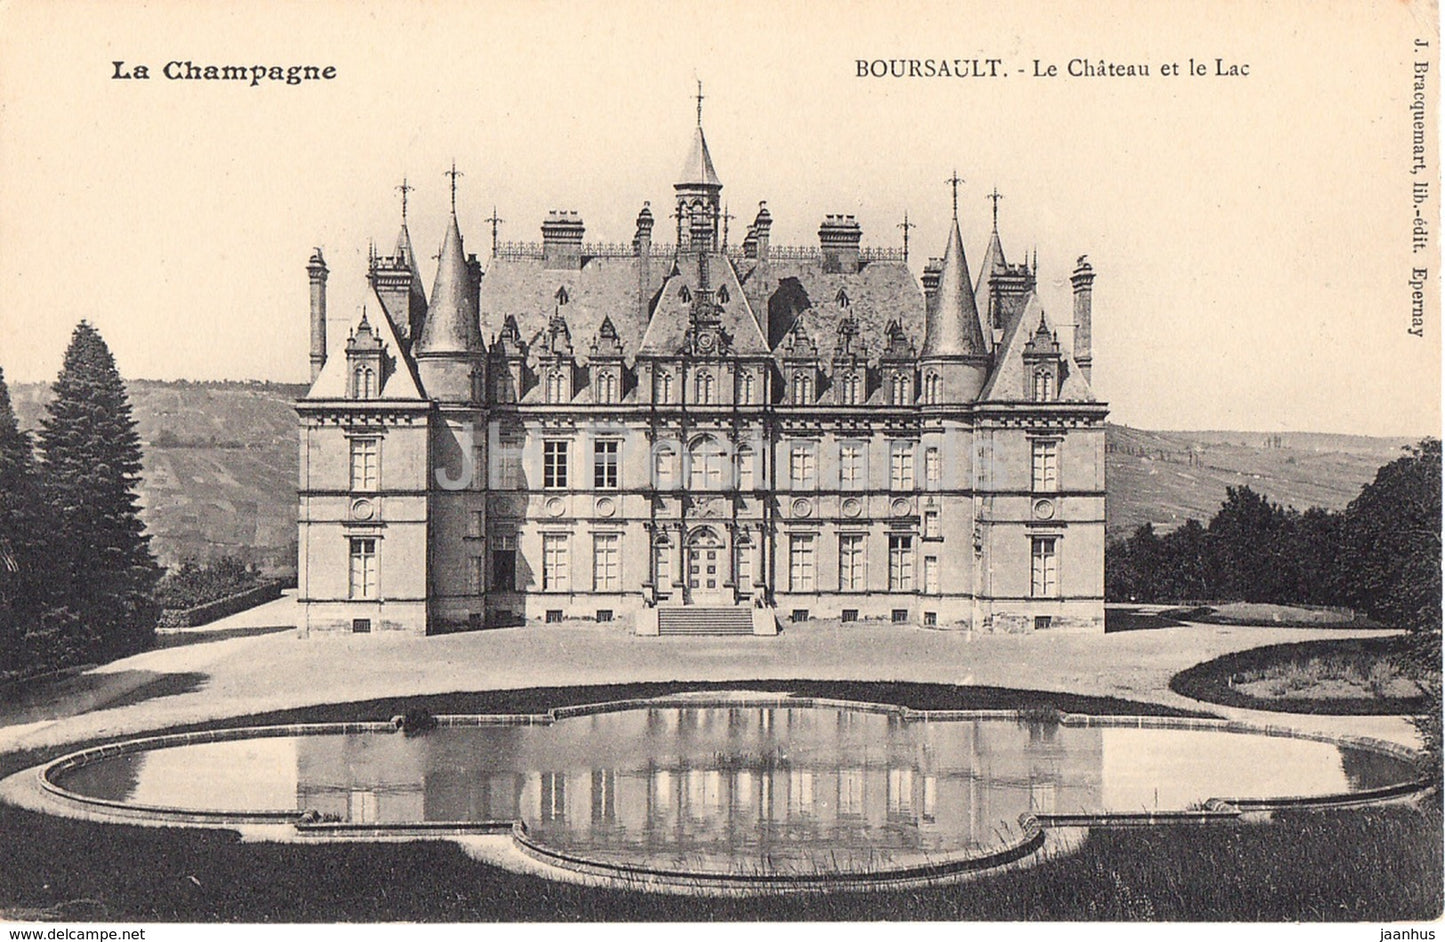 La Champagne - Boursault - Le Chateau et le Lac - castle - old postcard - France - unused - JH Postcards